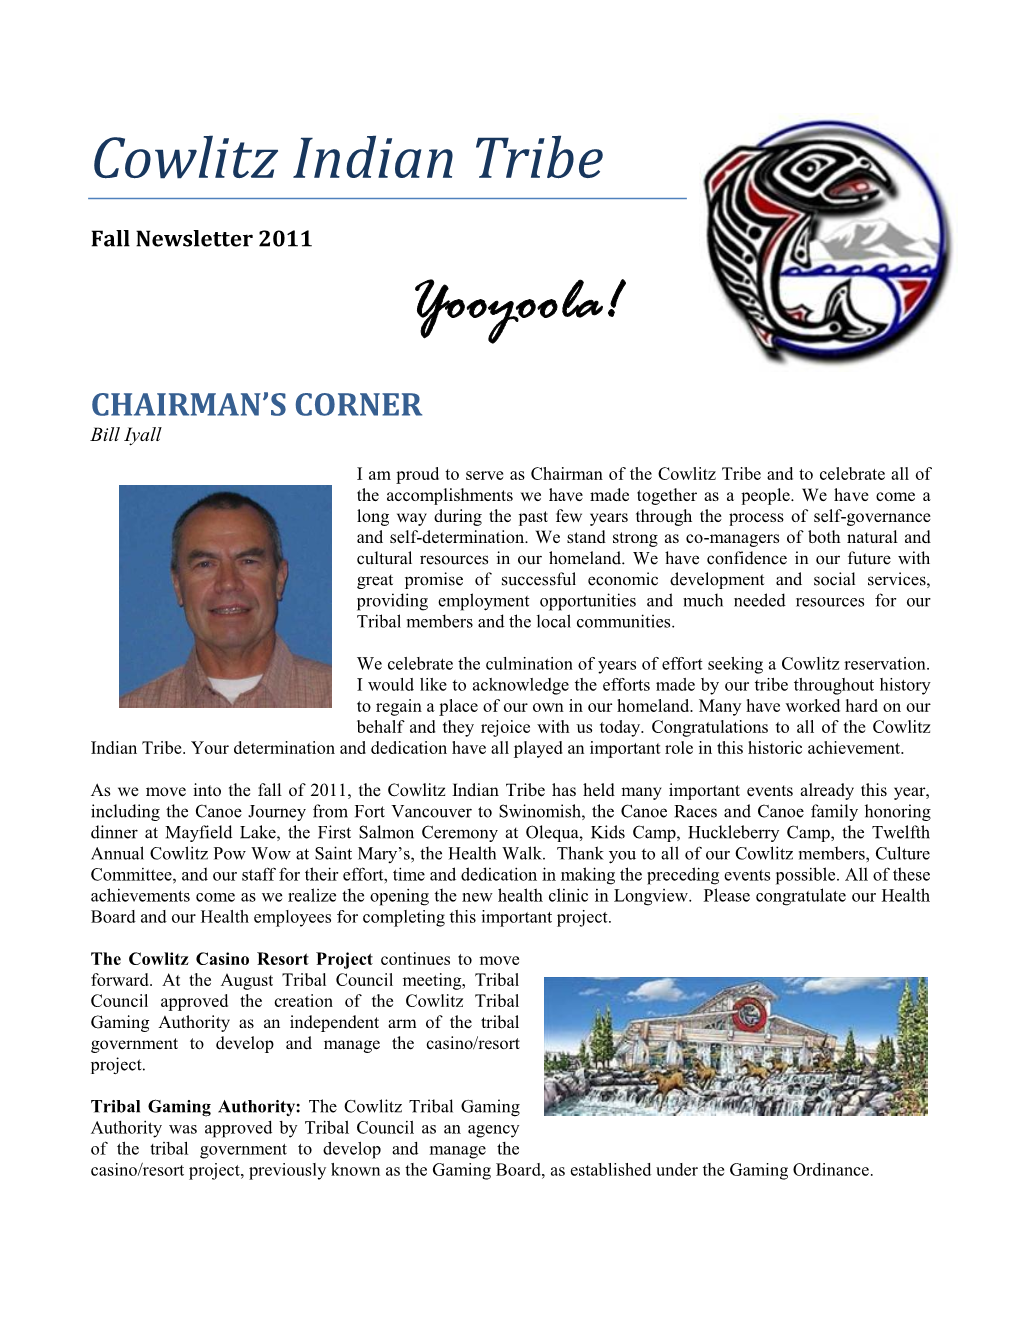 Cowlitz Indian Tribe Yooyoola!